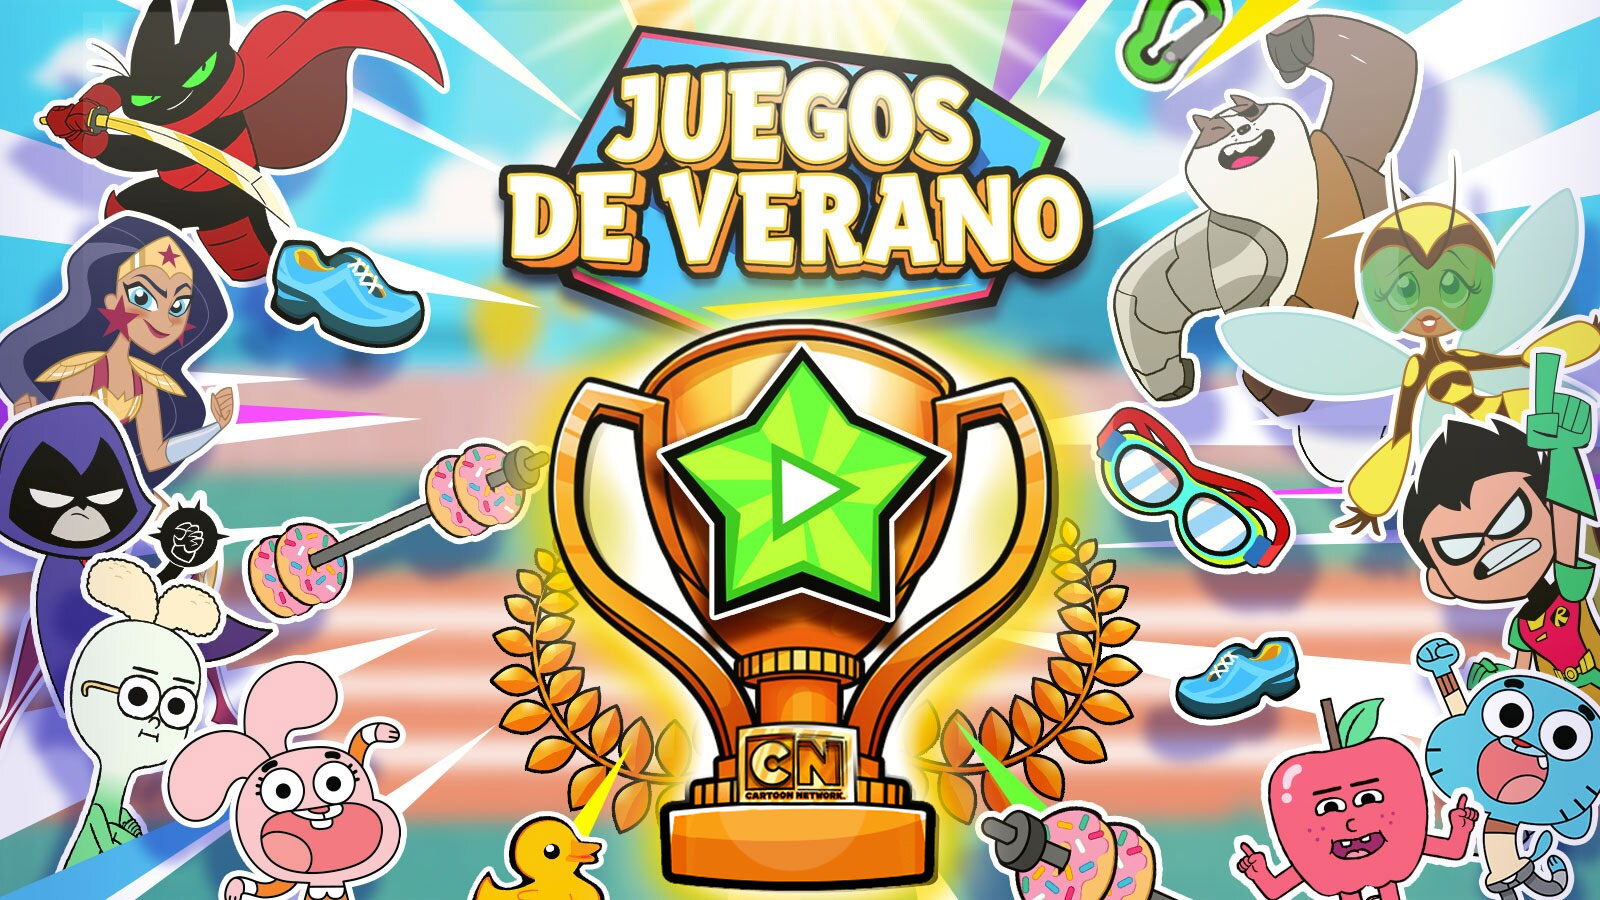 Juegos de Verano | Cartoon Network Colombia